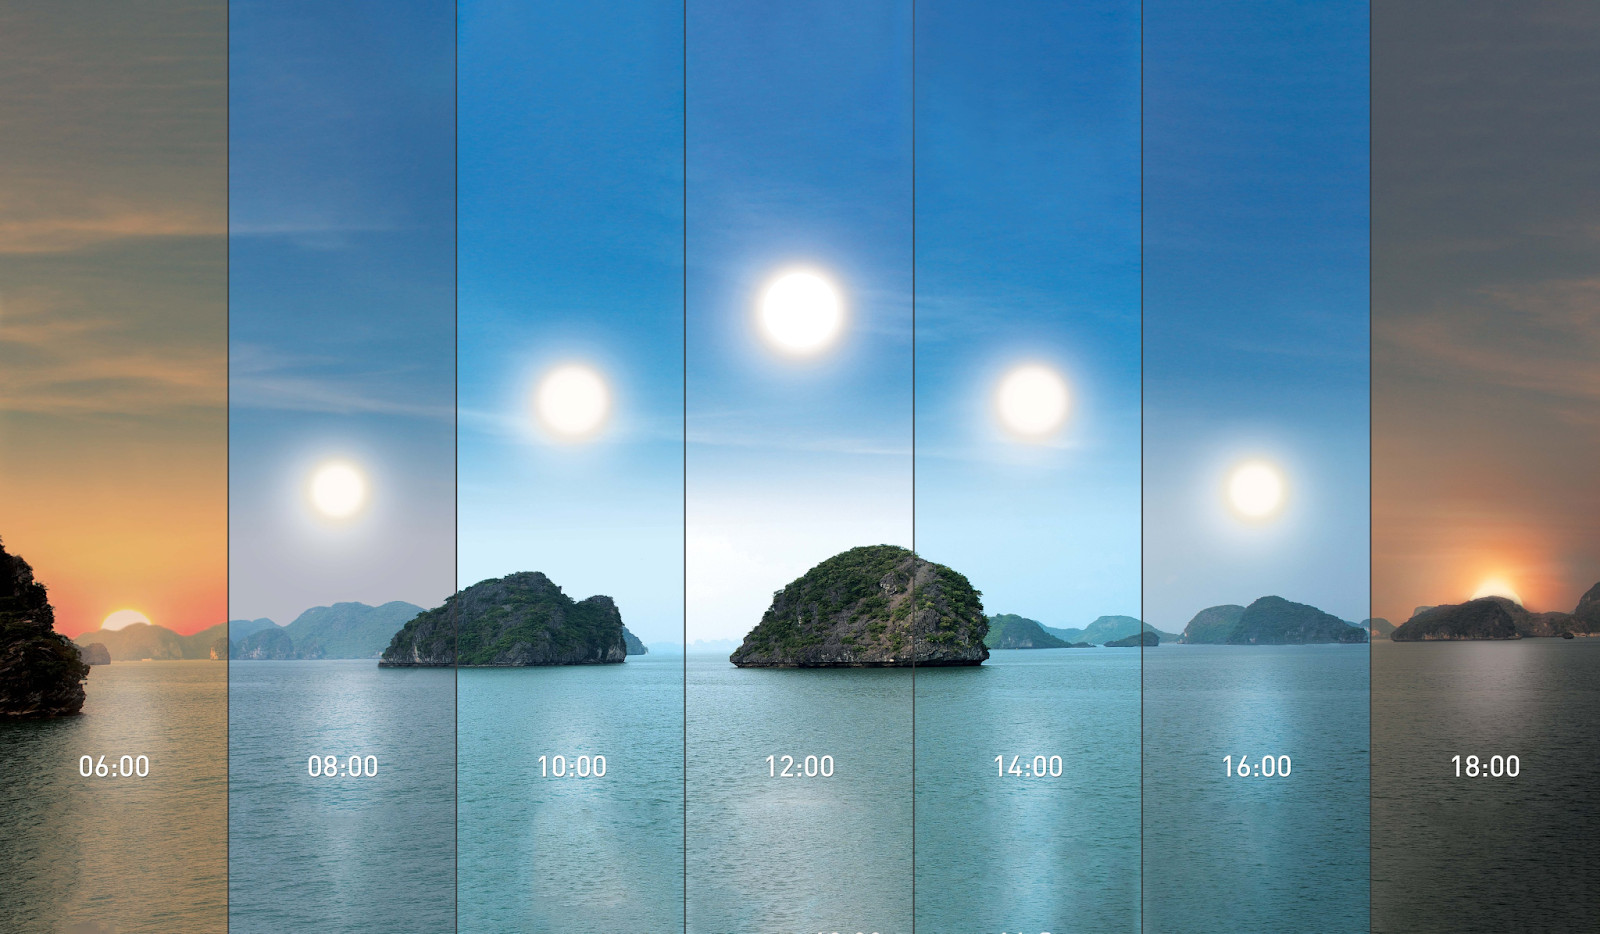 Thay đổi cường độ ánh sáng khác nhau tùy thời gian trong ngày